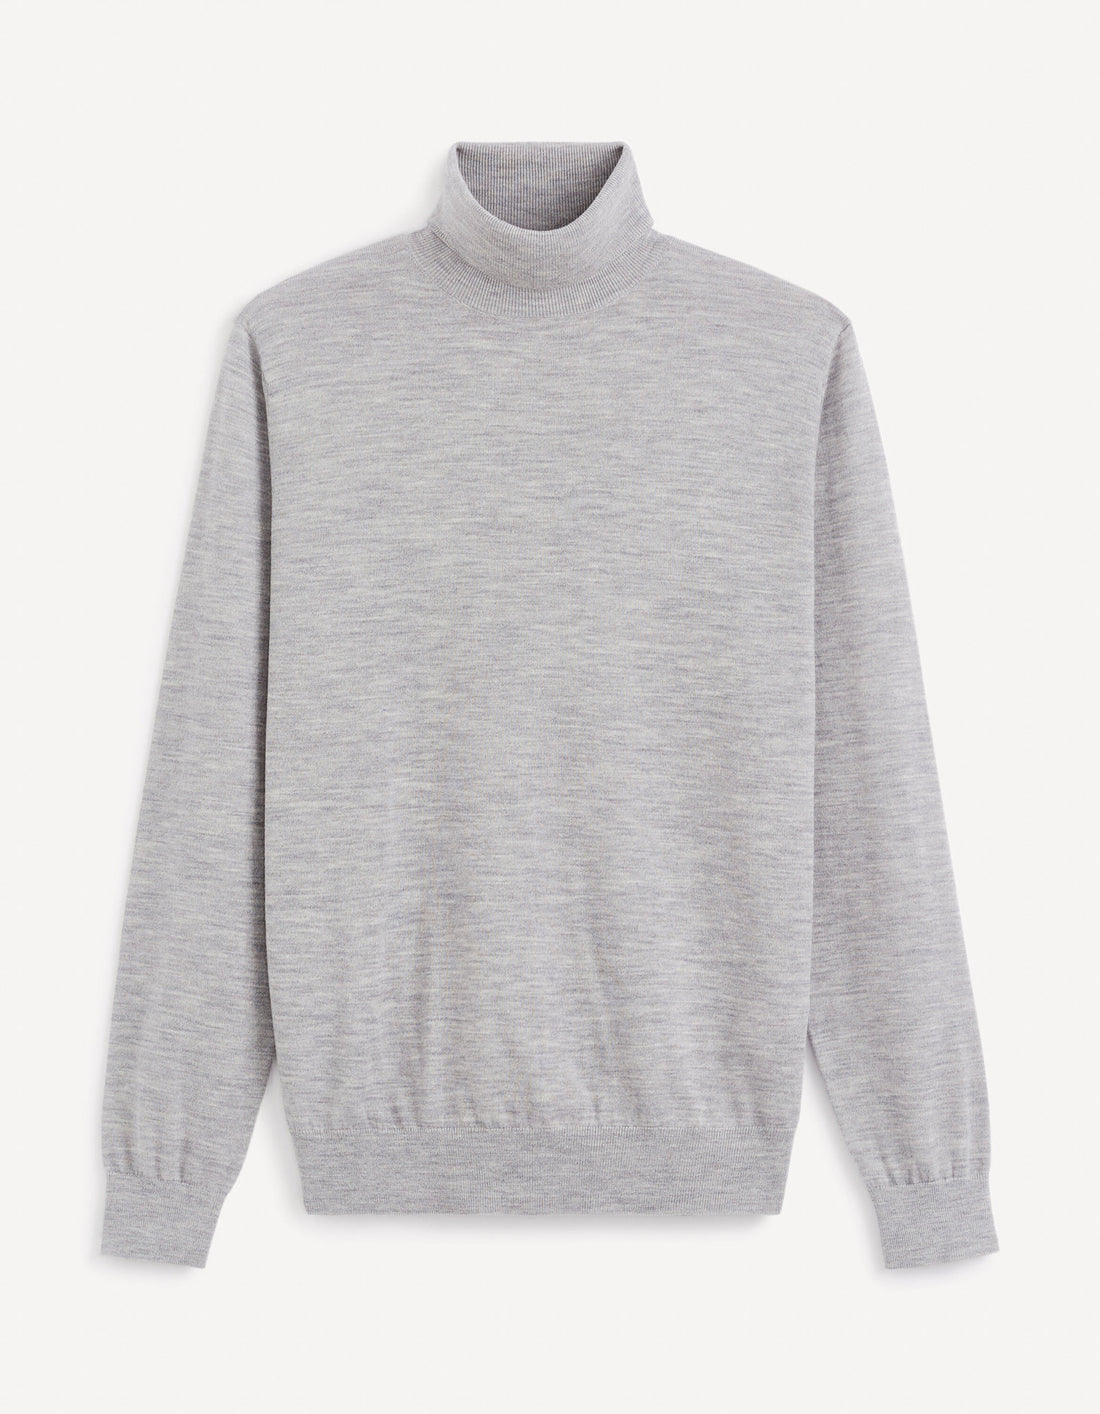 Turtleneck Sweater 100% Merino Wool_MENOS_GREY MEL_02